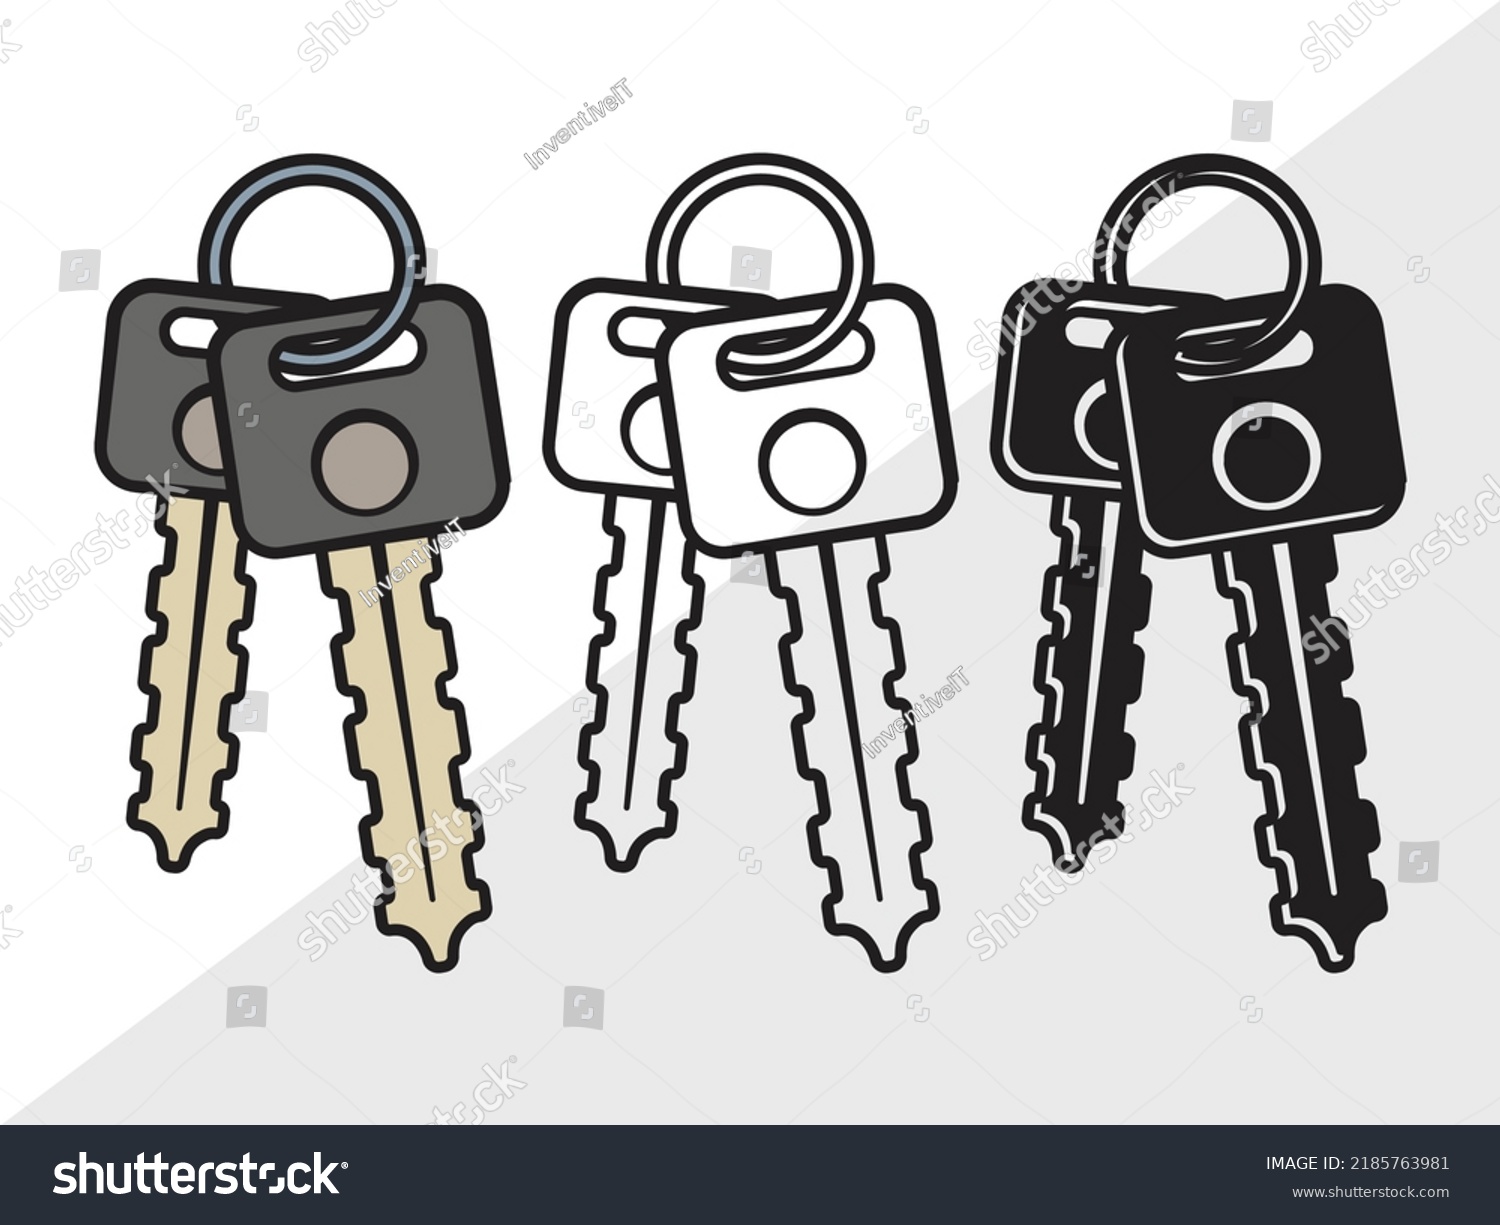 SVG of Car Keys SVG Printable Vector Illustration svg